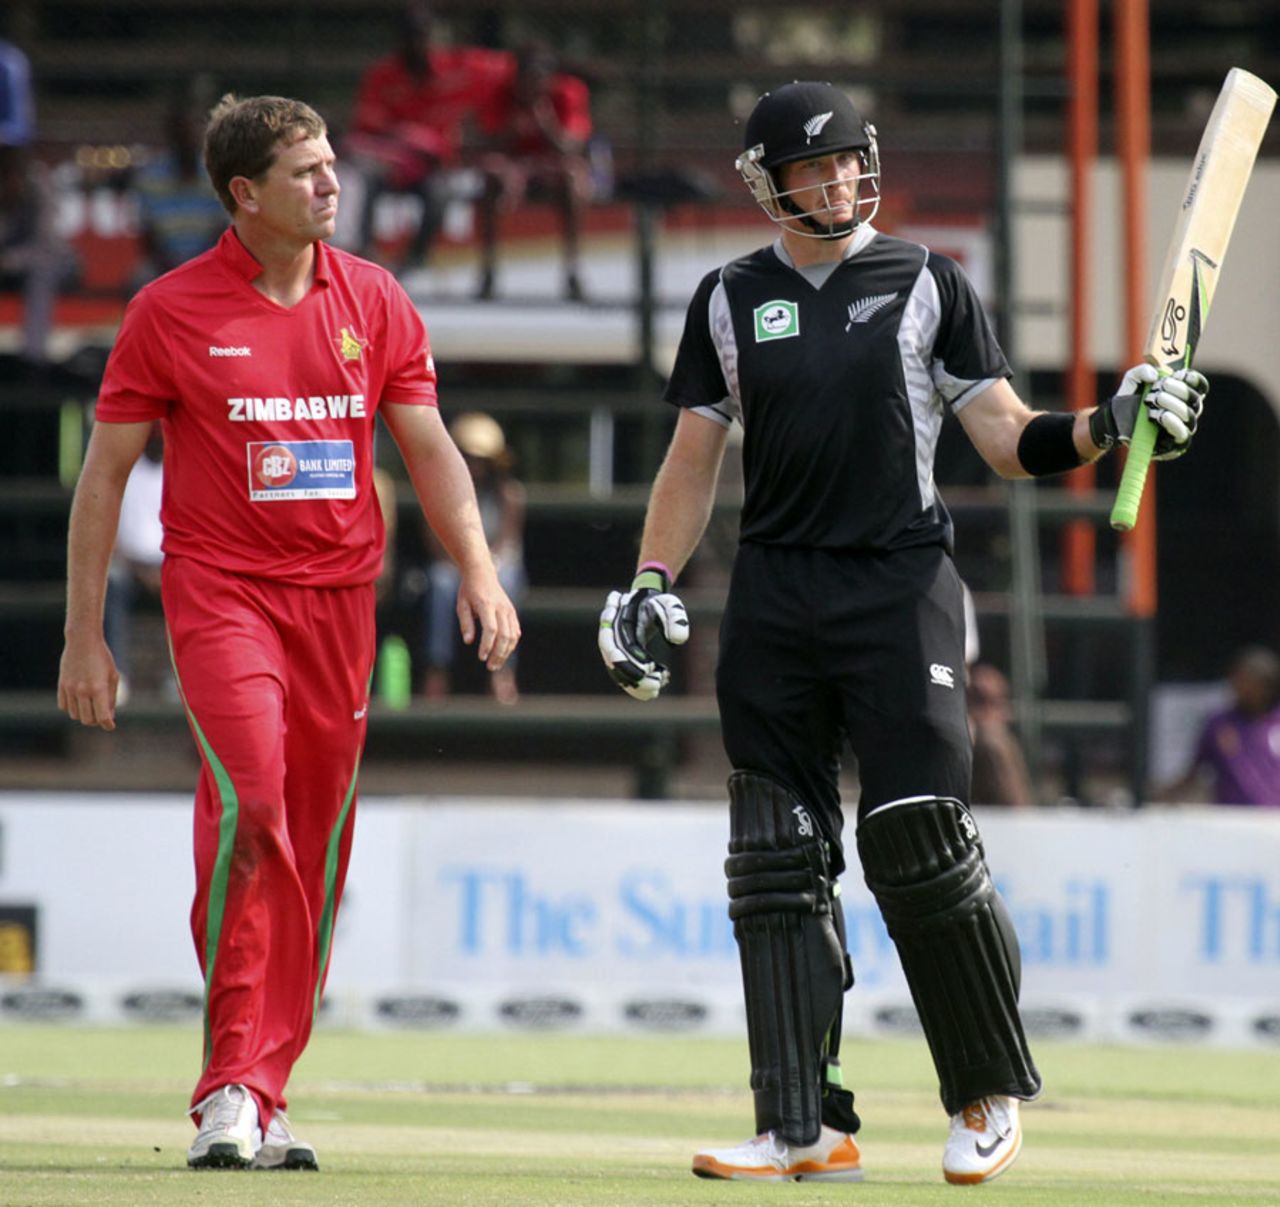 Martin Guptill reaches his half-century, Zimbabwe v New Zealand, 1st ODI, Harare, October 20, 2011 